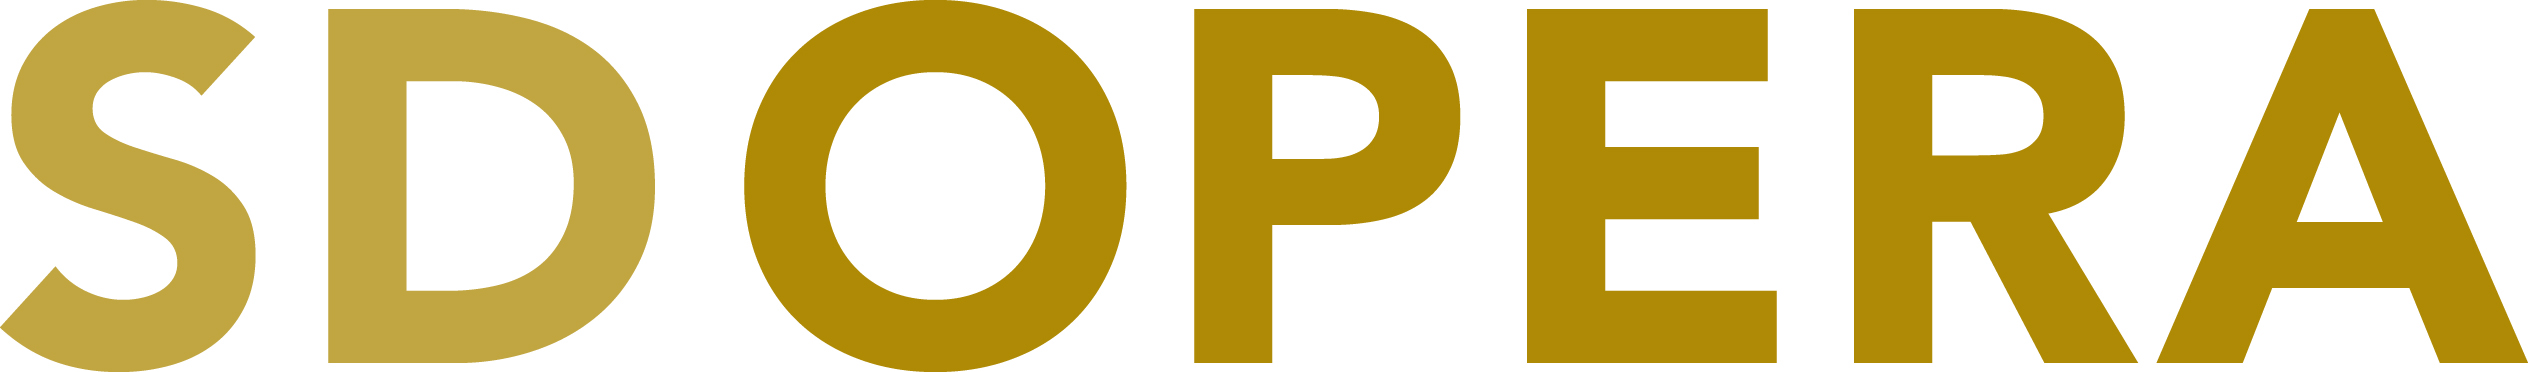 San Diego Opera logo